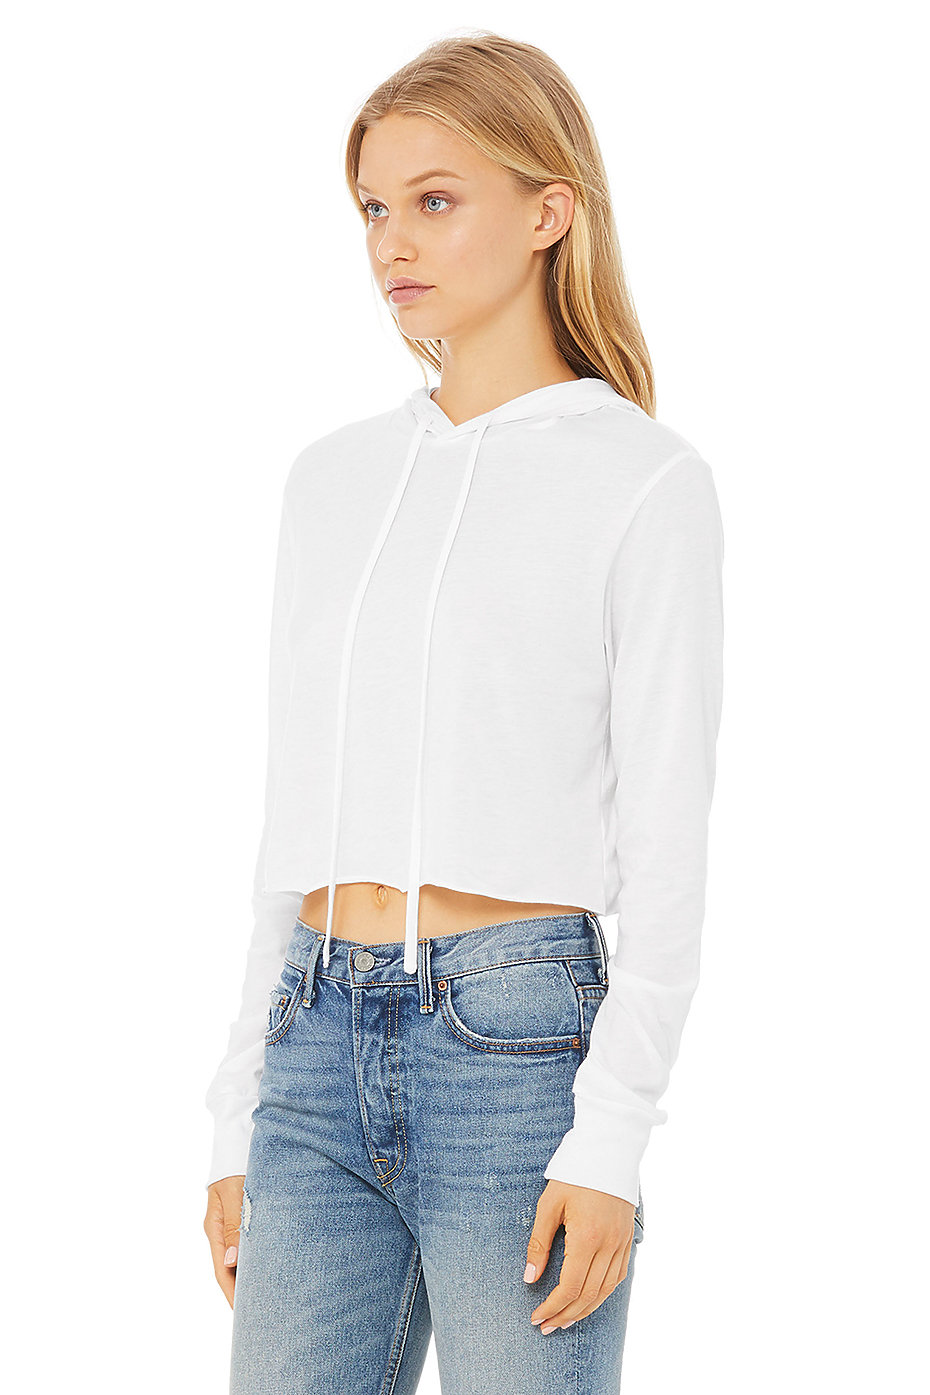 Cropped Hoodie | Long Sleeve Crop Top | Womens Wholesale Clothing | Blank  Hoodies | BELLA+CANVAS ®